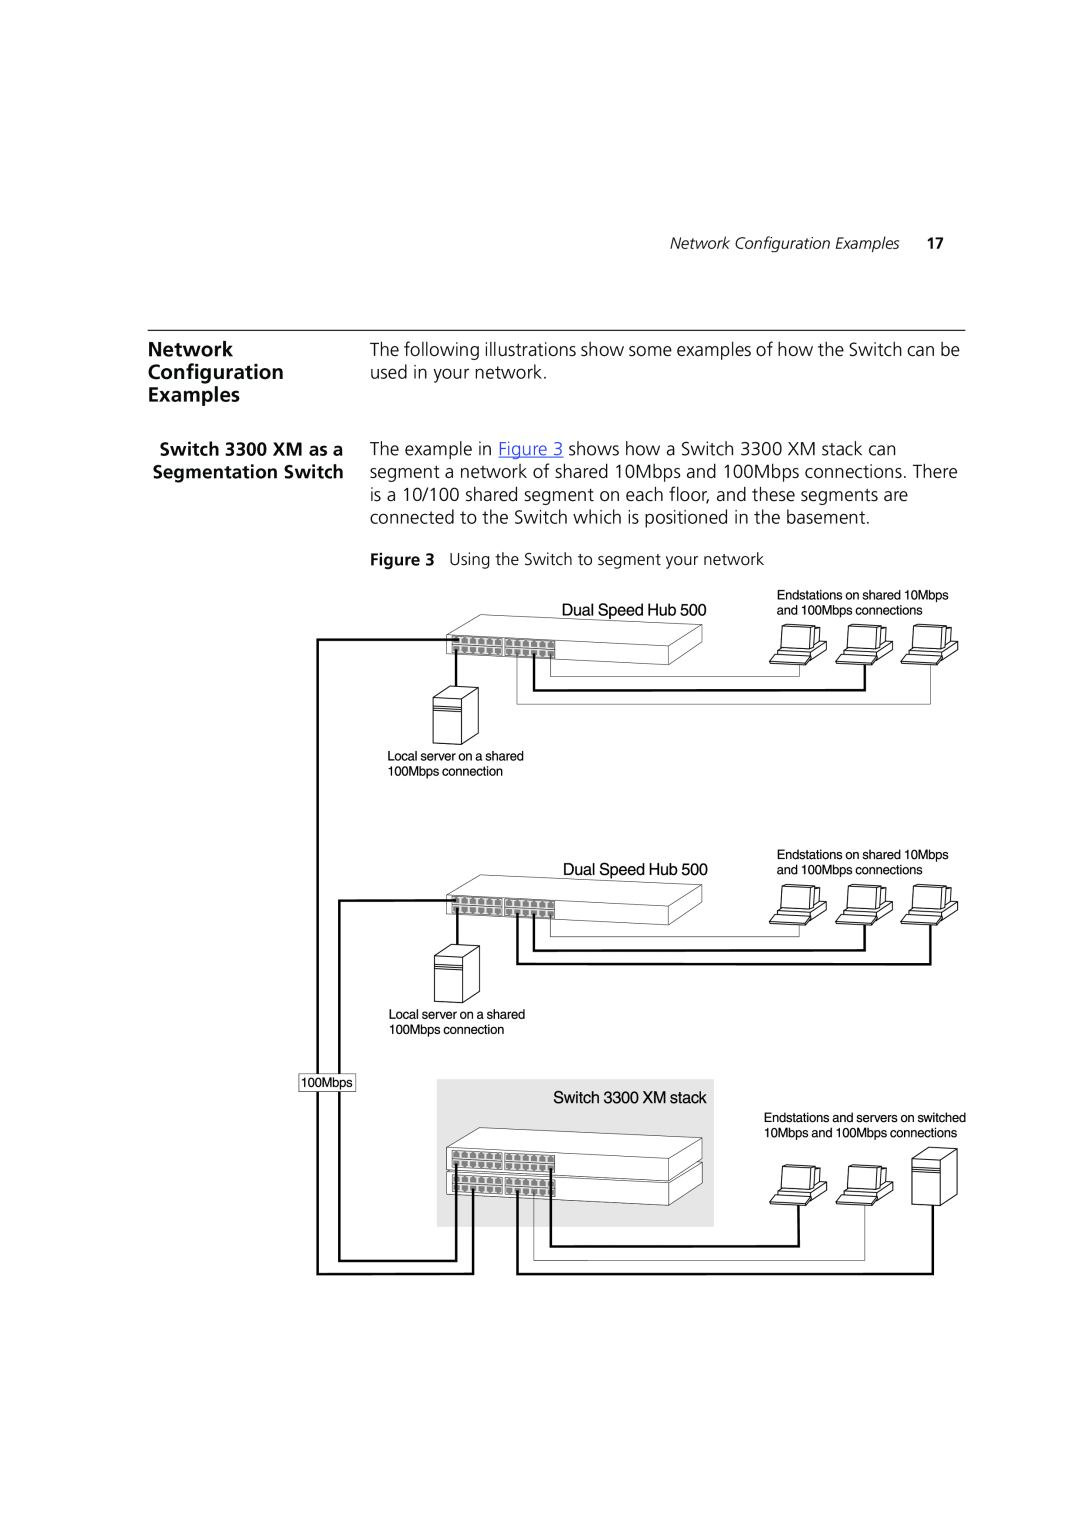 3Com DUA1698 manual Network, Configuration, Examples, Segmentation Switch 